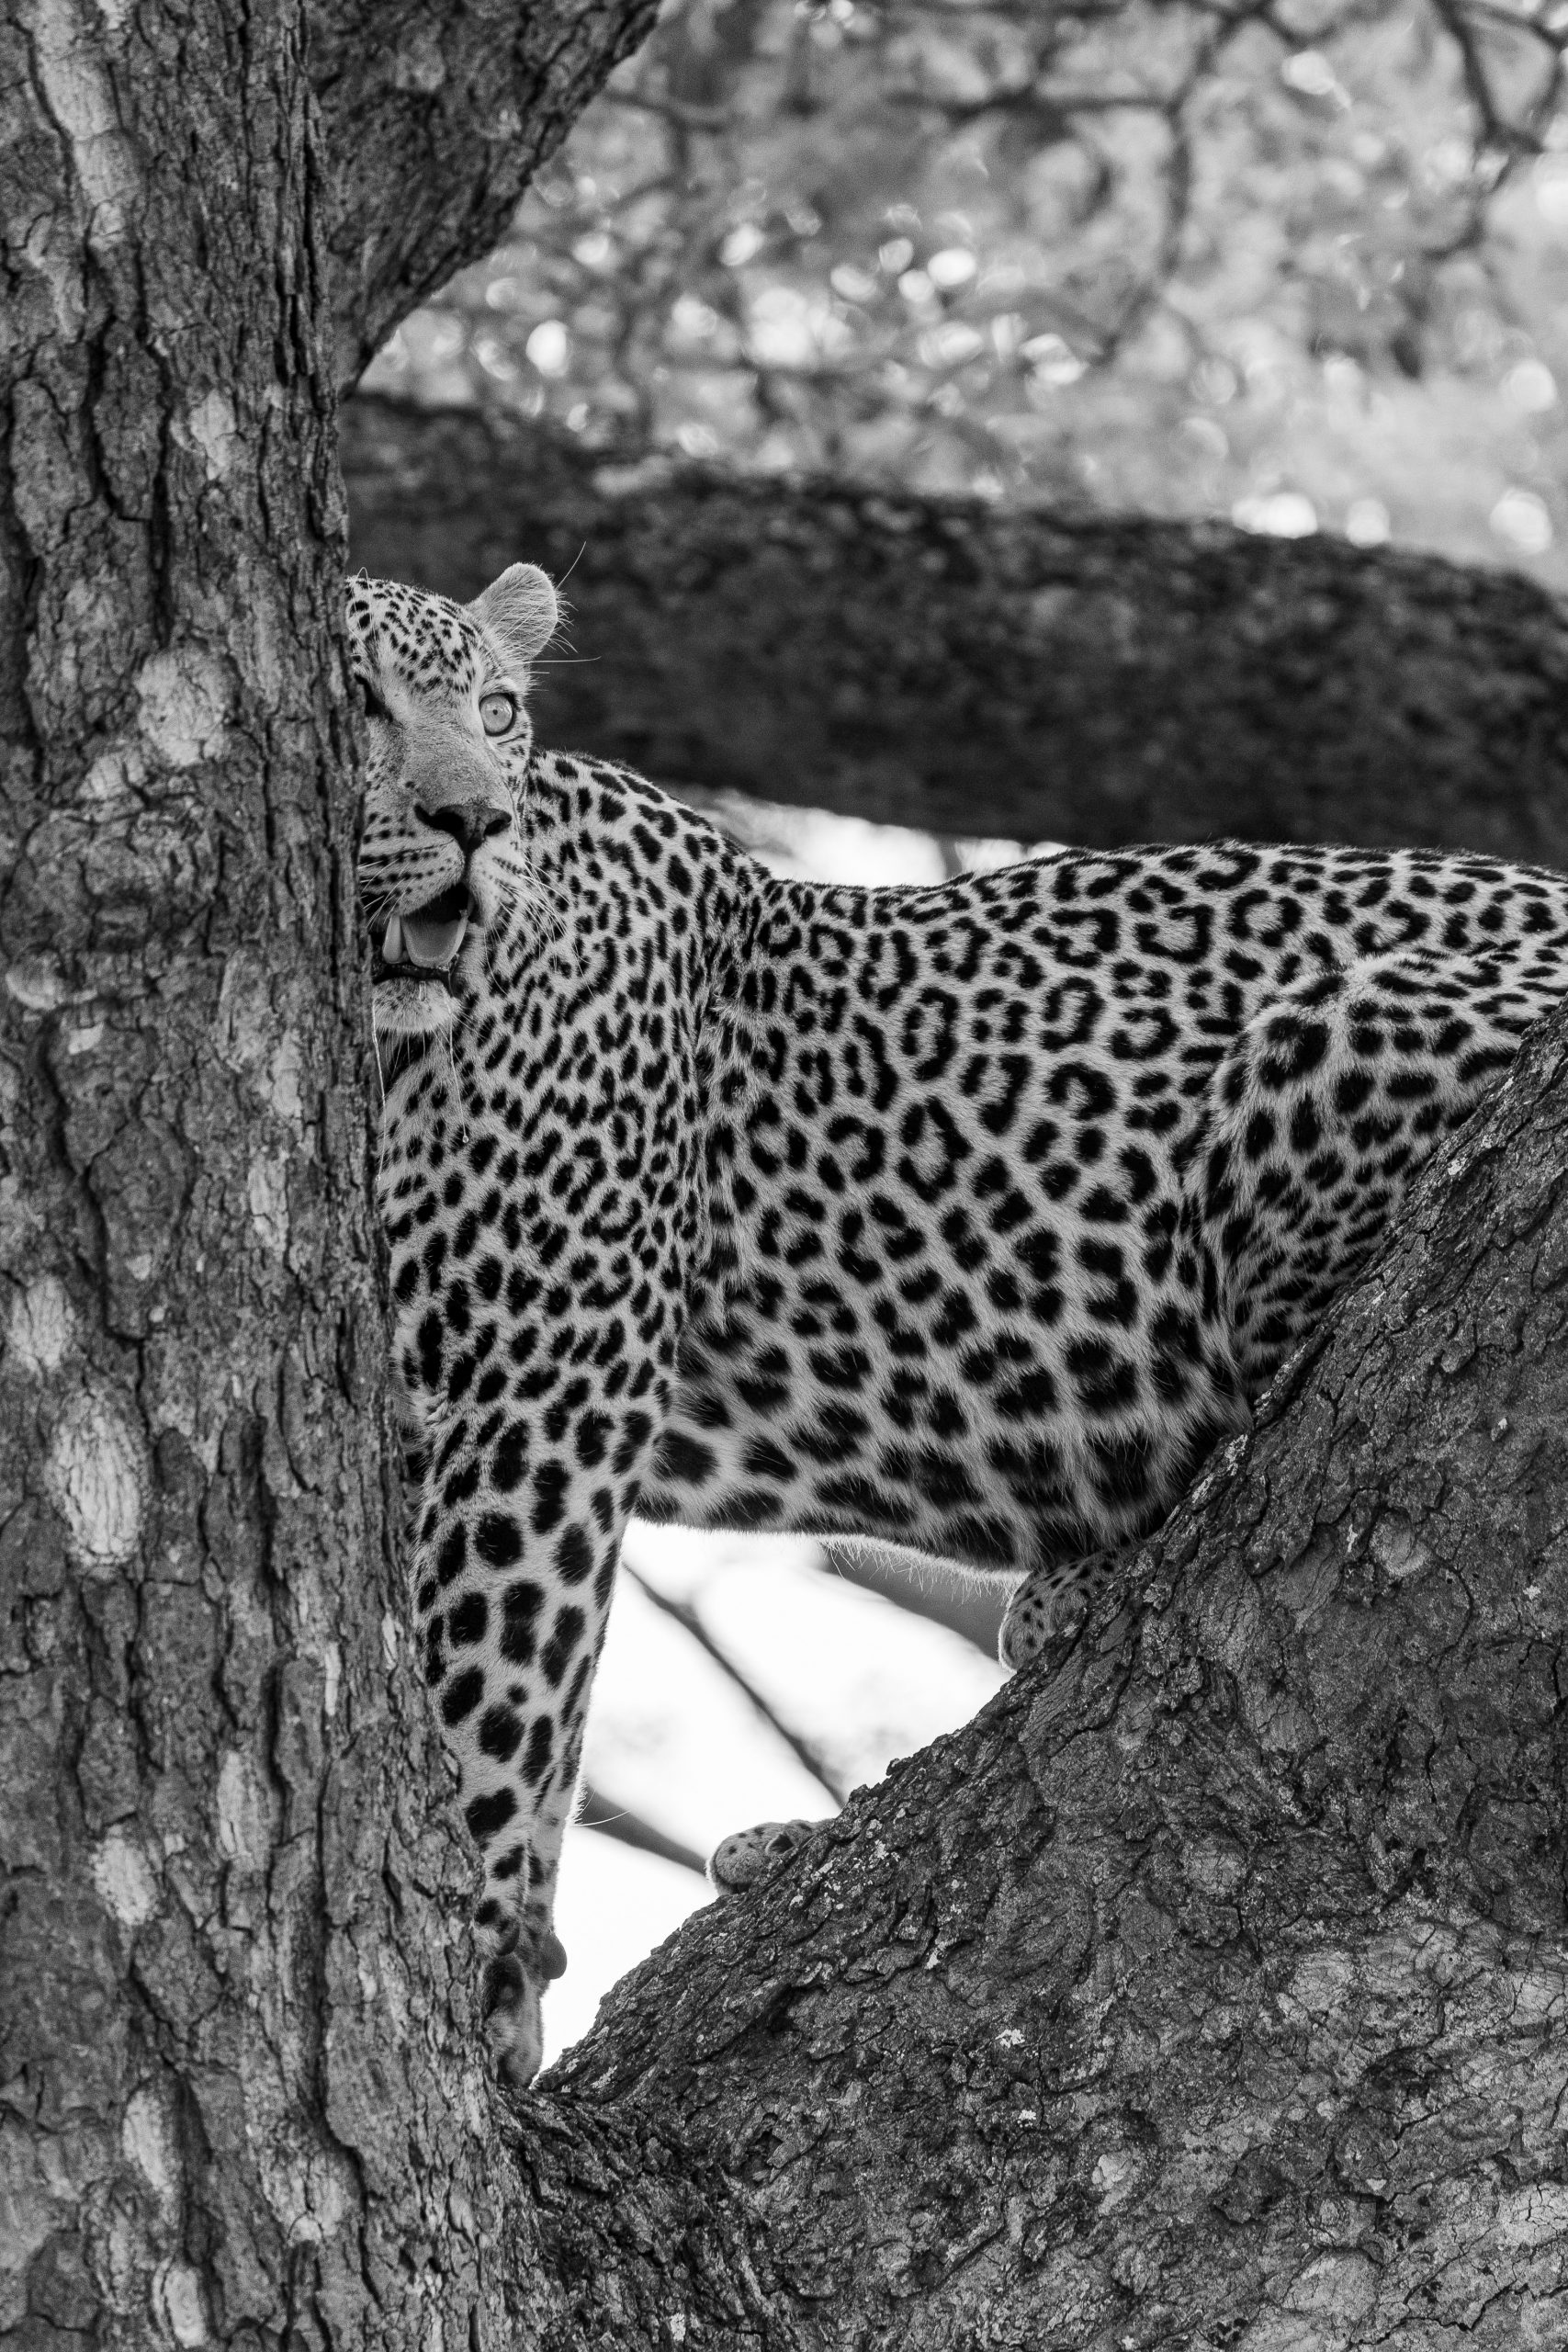 Leopard standing in tree